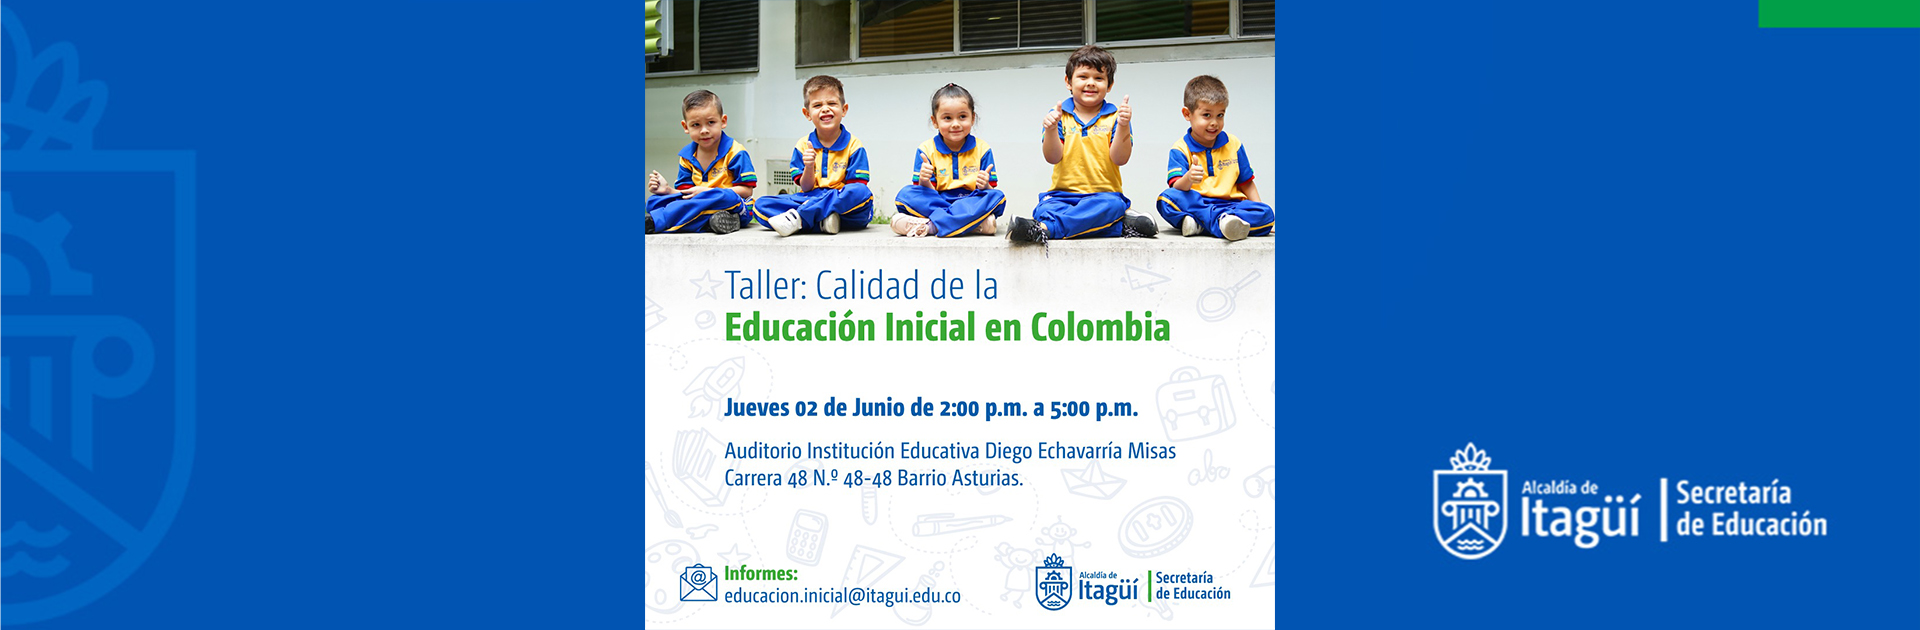 Taller - Calidad de la Educación Inicial en Colombia